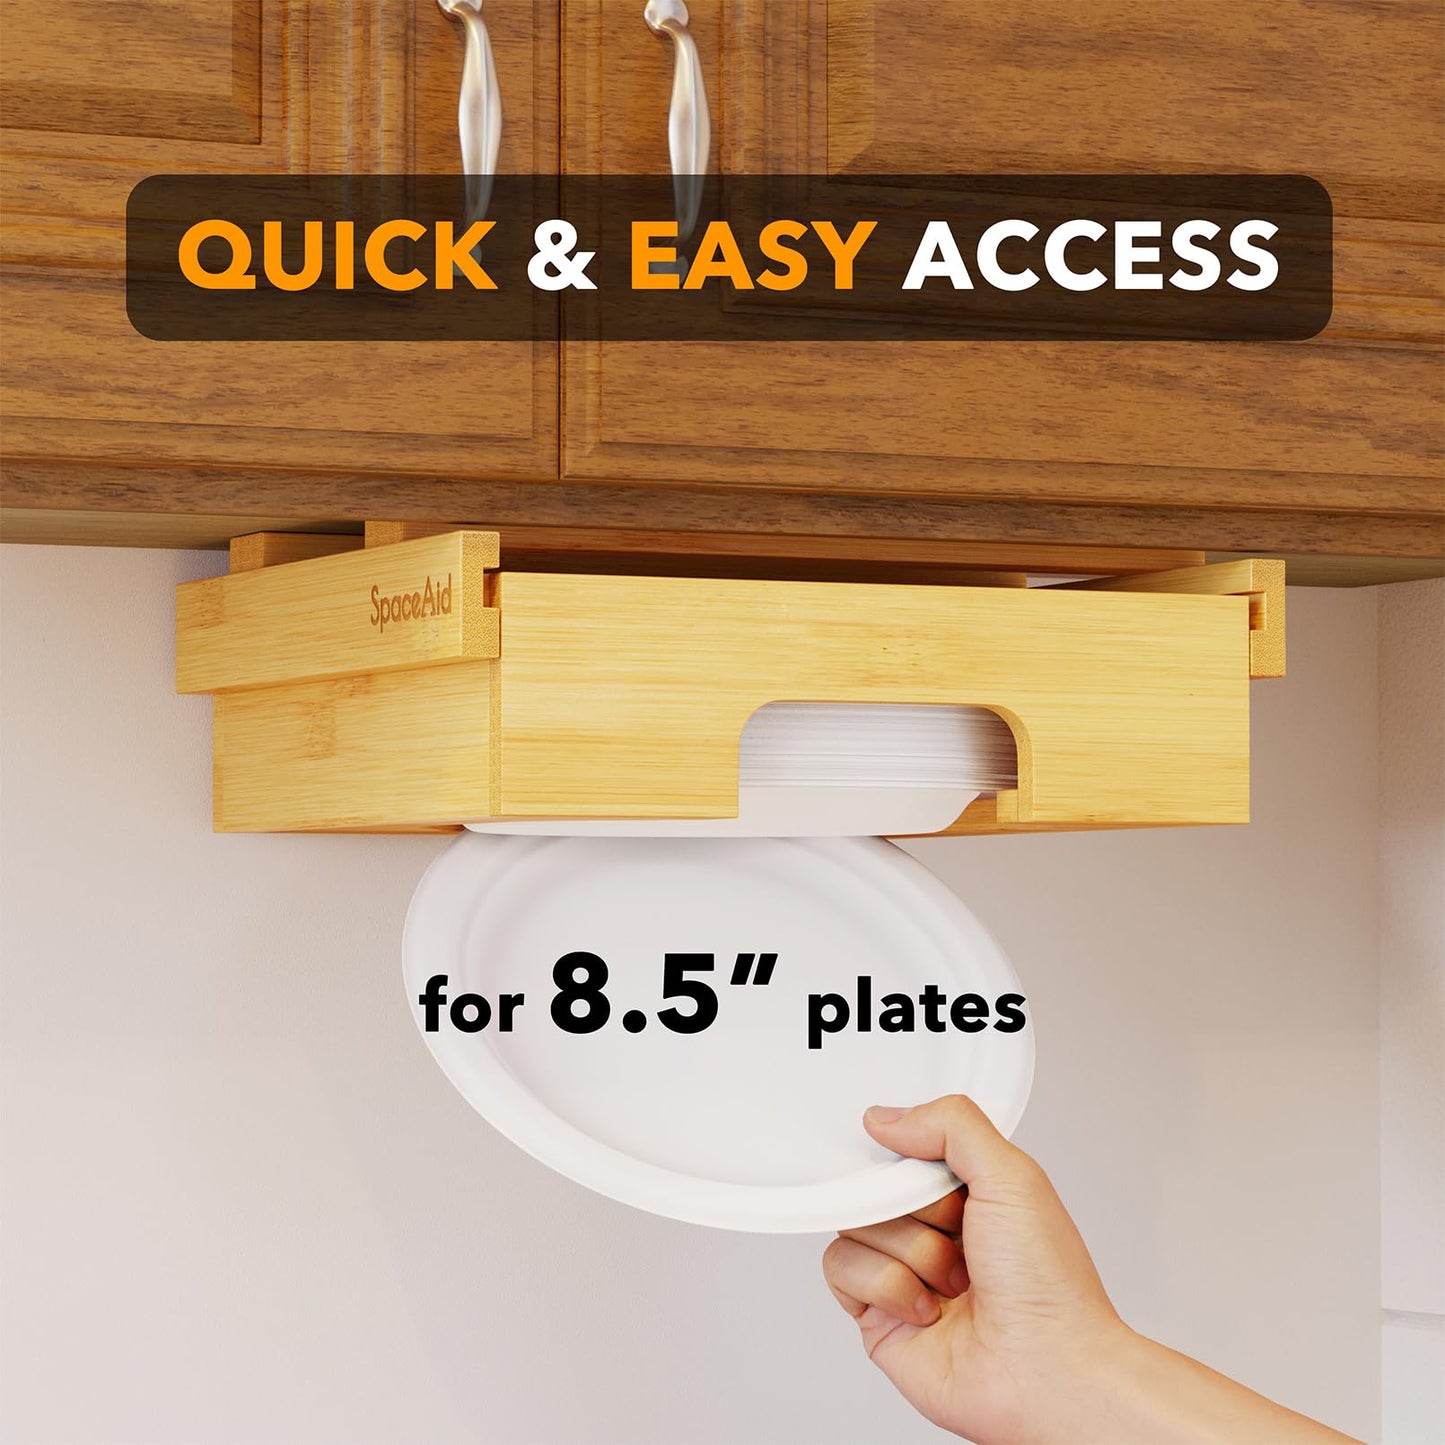 PRODUCTO 648-6 Dispensador de platos de papel SpaceAid de 8,5 pulgadas, soporte para platos de bambú debajo del gabinete, soportes para dispensadores de platos verticales para mostrador de cocina, carrito para encimera (para platos de 8,5 pulgadas, bambú)